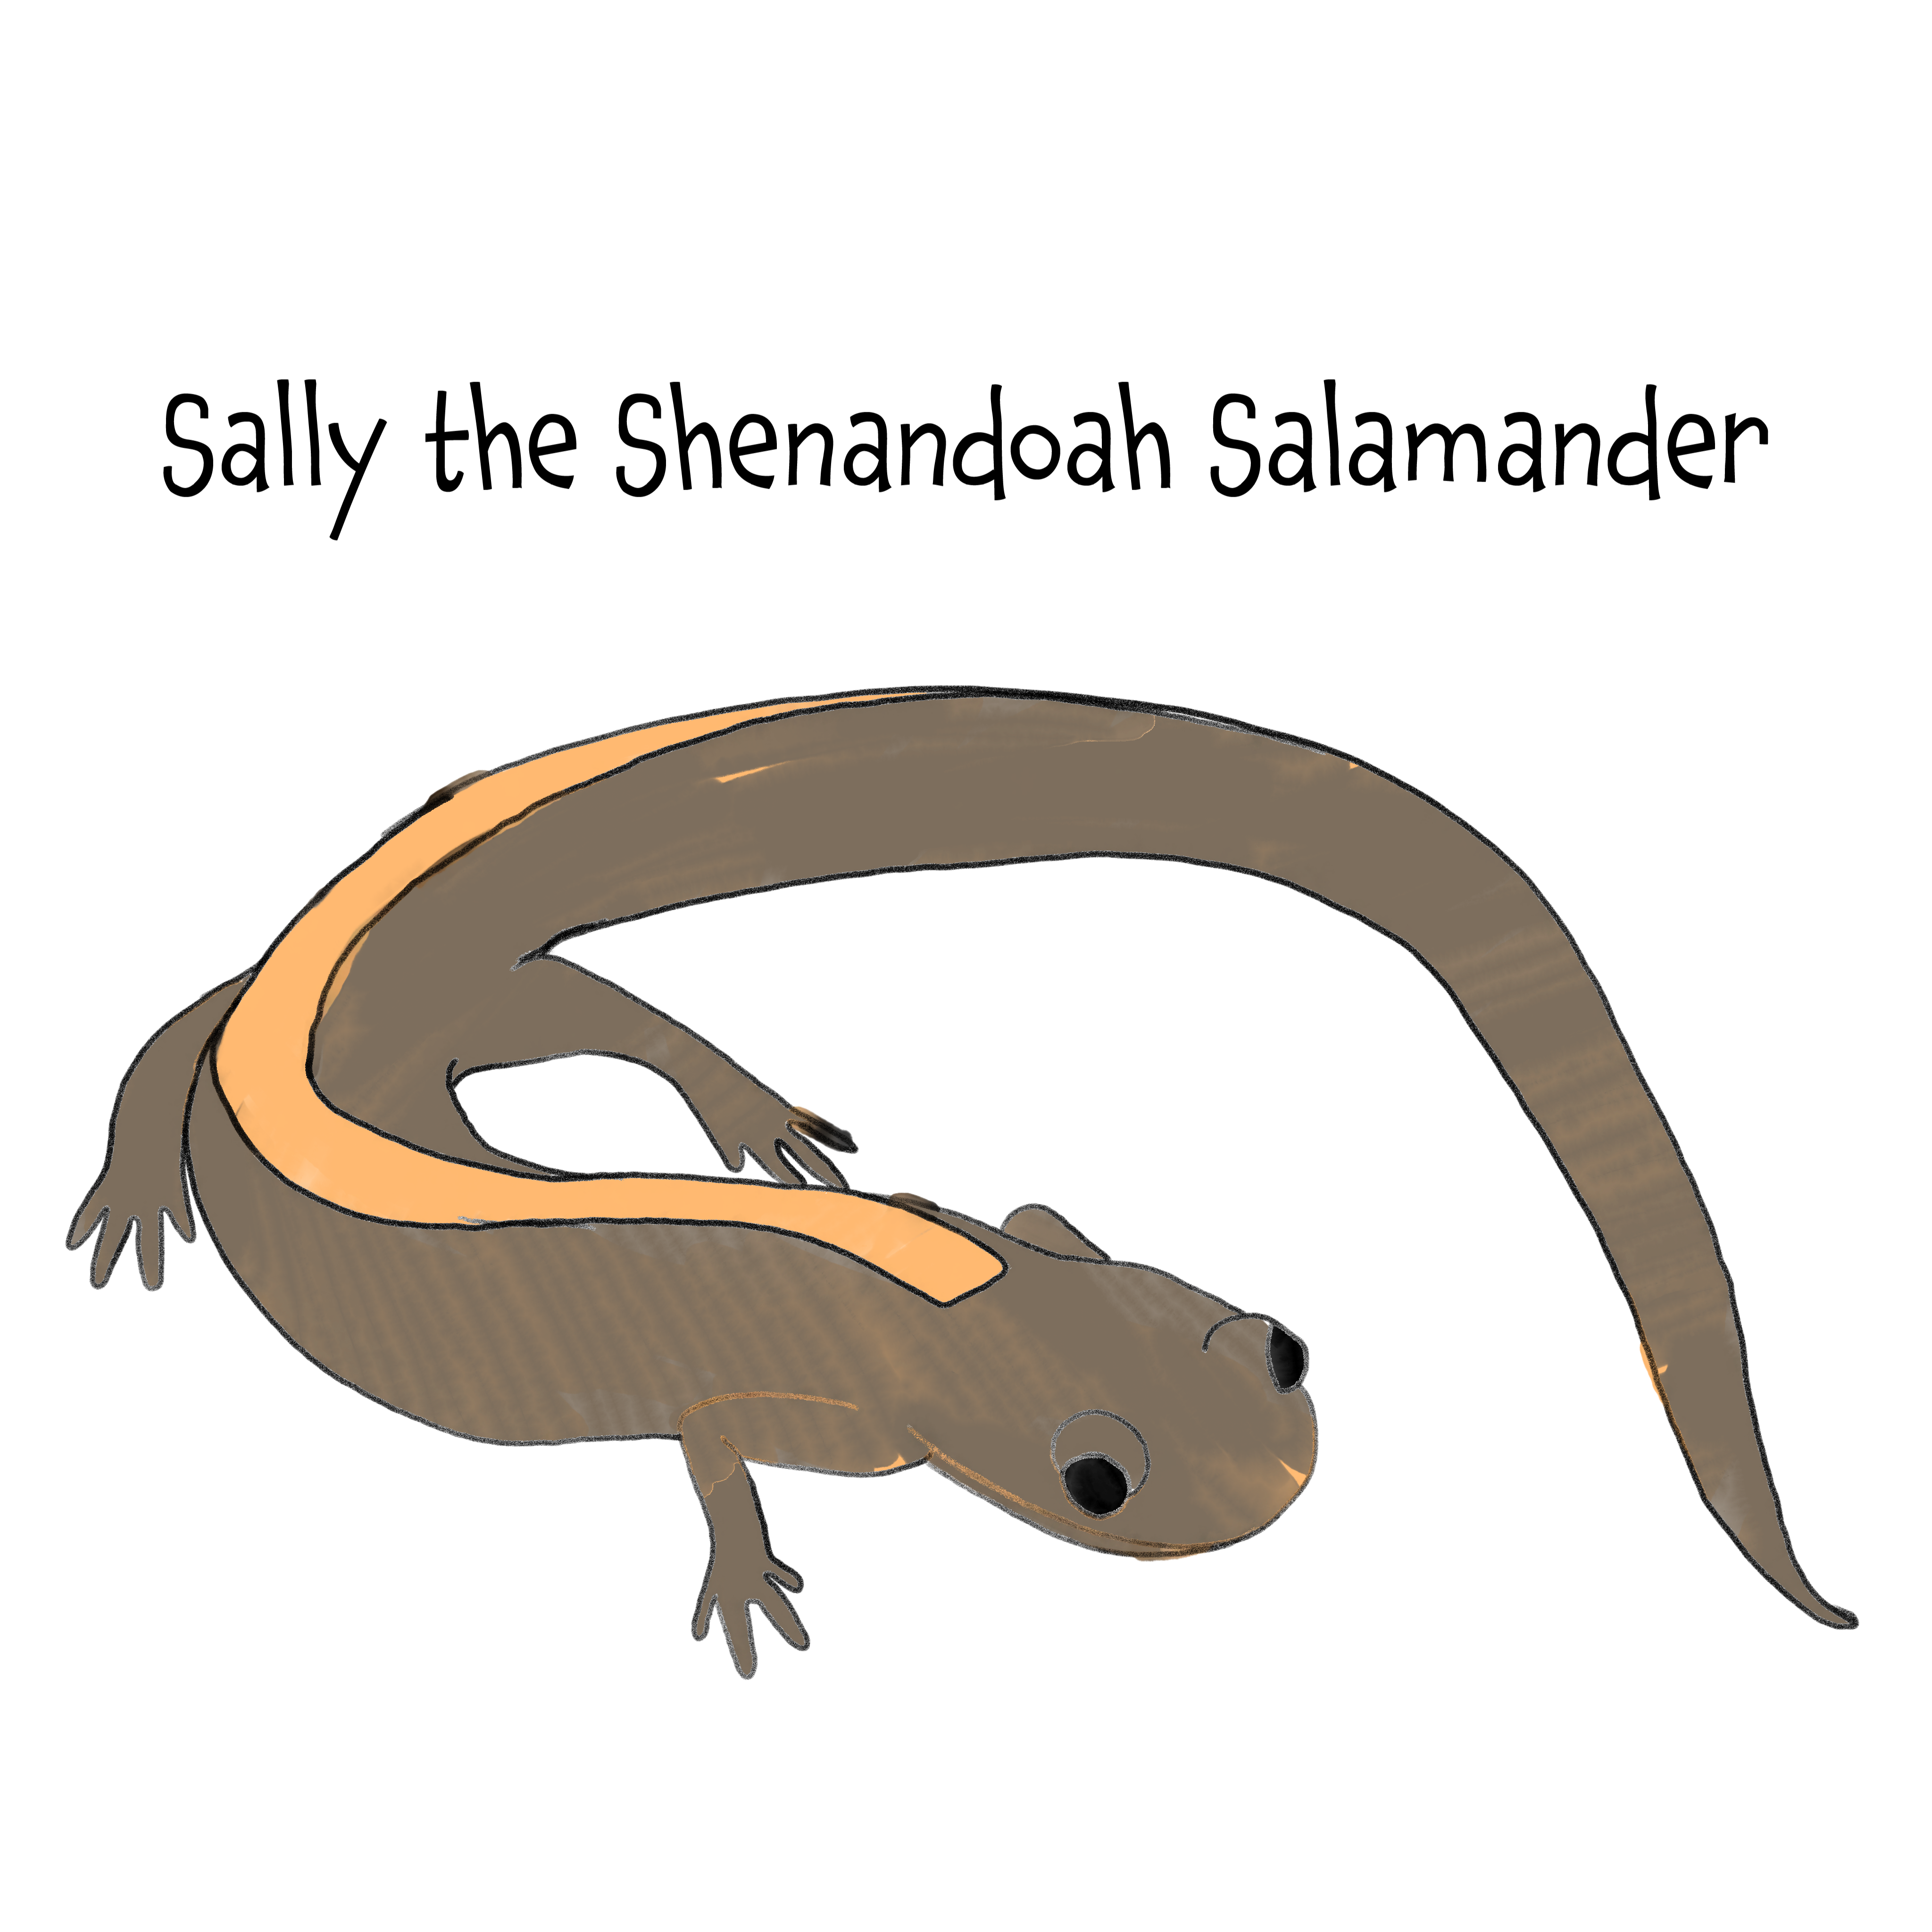 Sally the Shenandoah Salamander